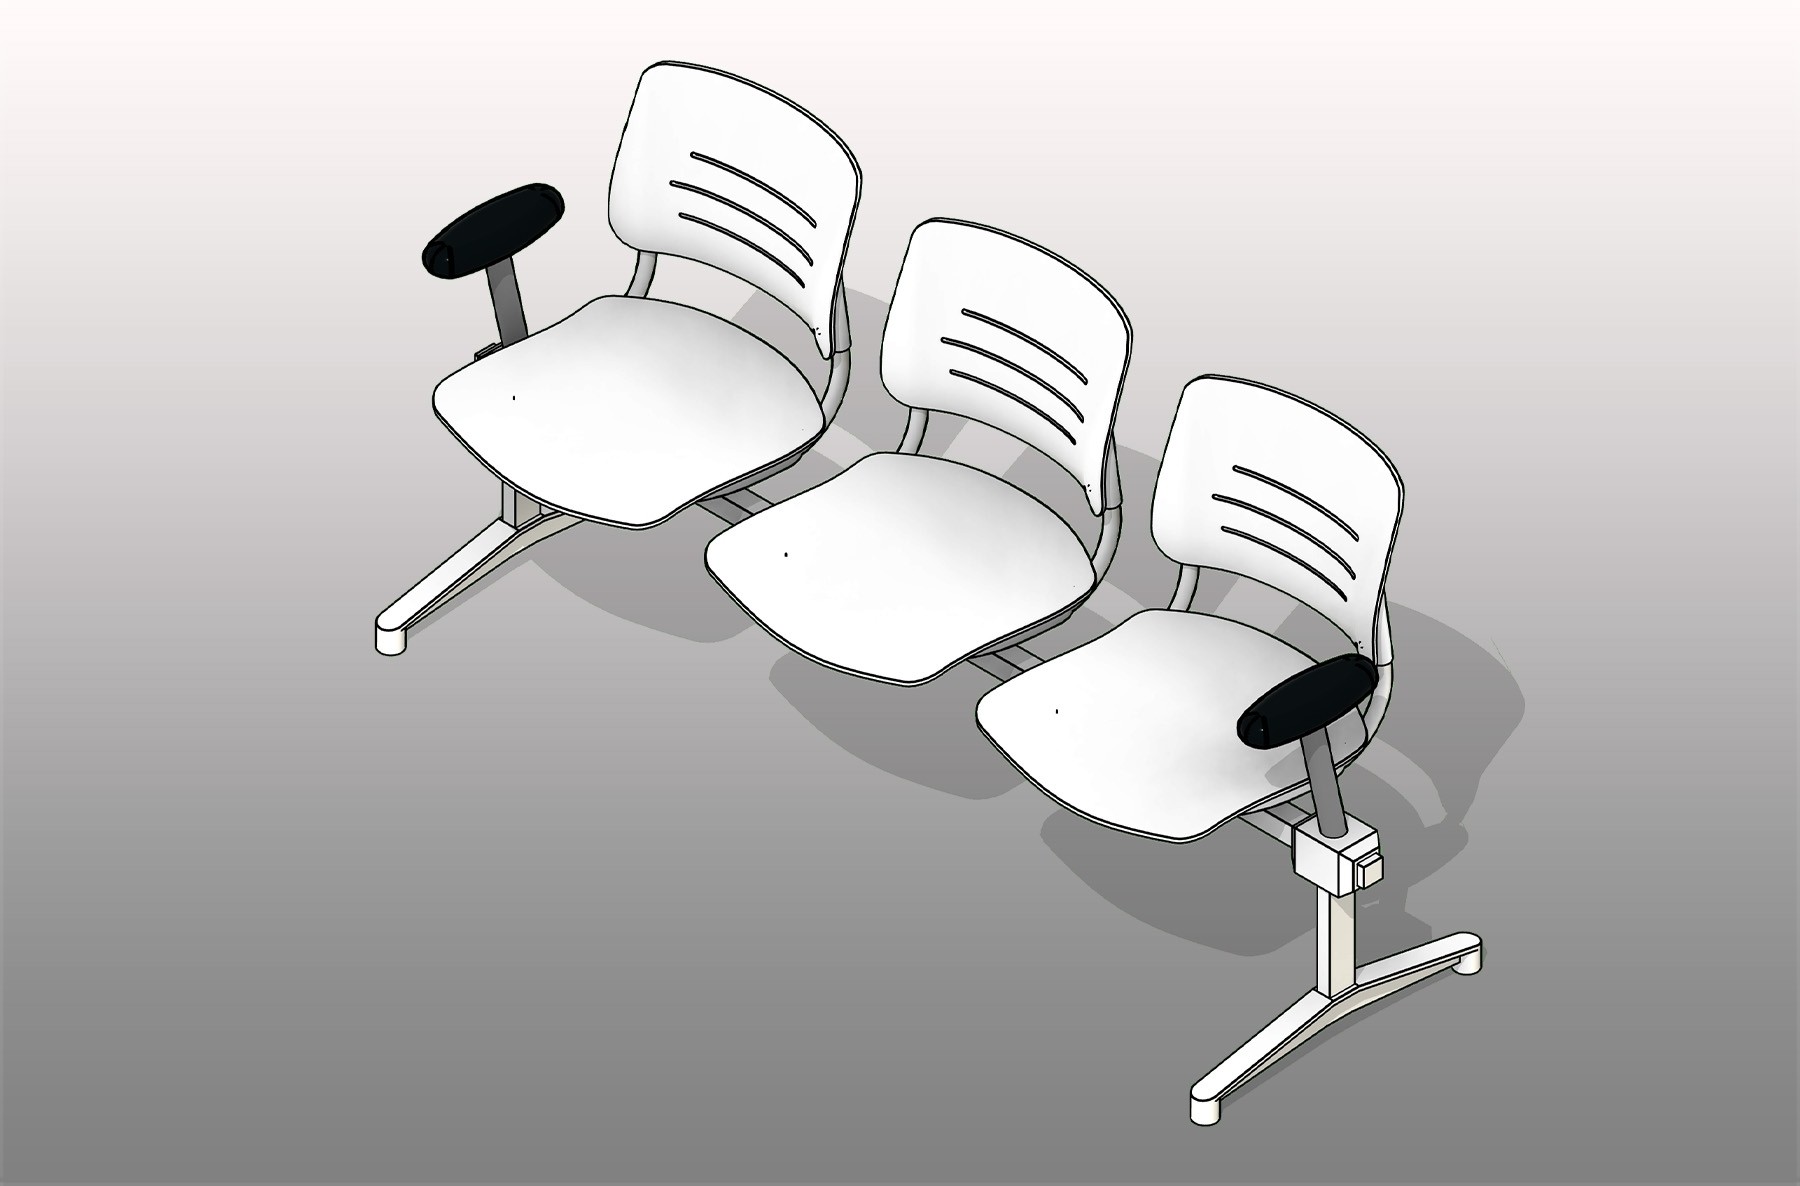 Lounge Armrests Polypropylene Seating